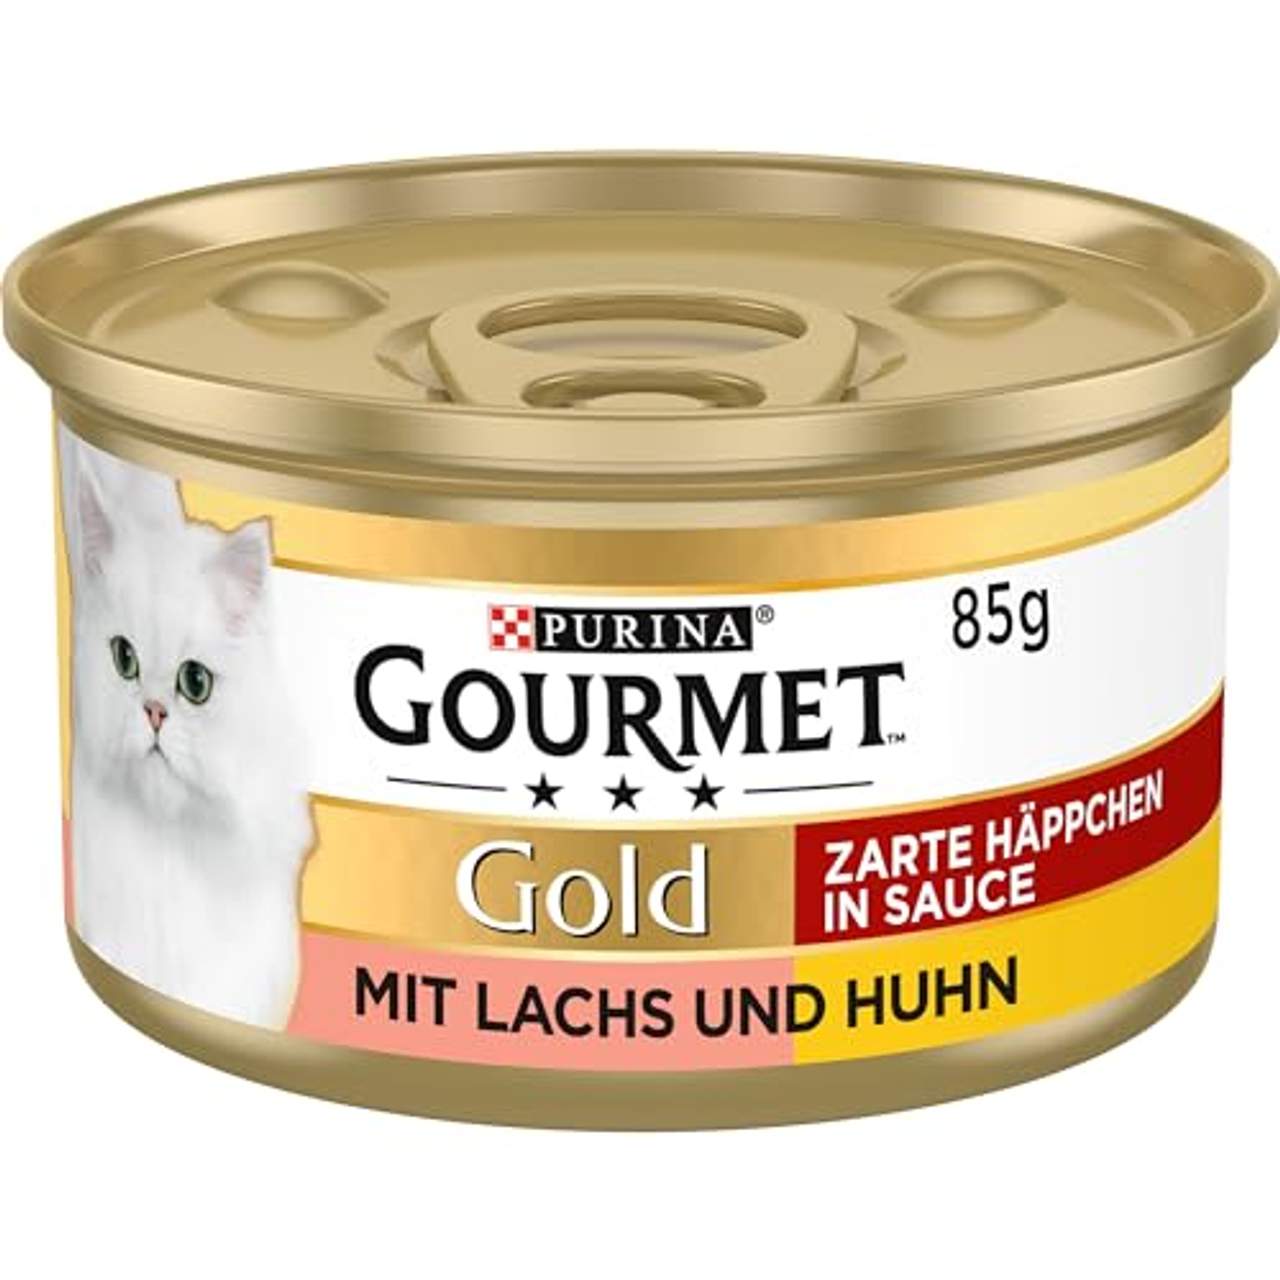 PURINA GOURMET Gold Zarte Häppchen in Sauce Katzenfutter nass